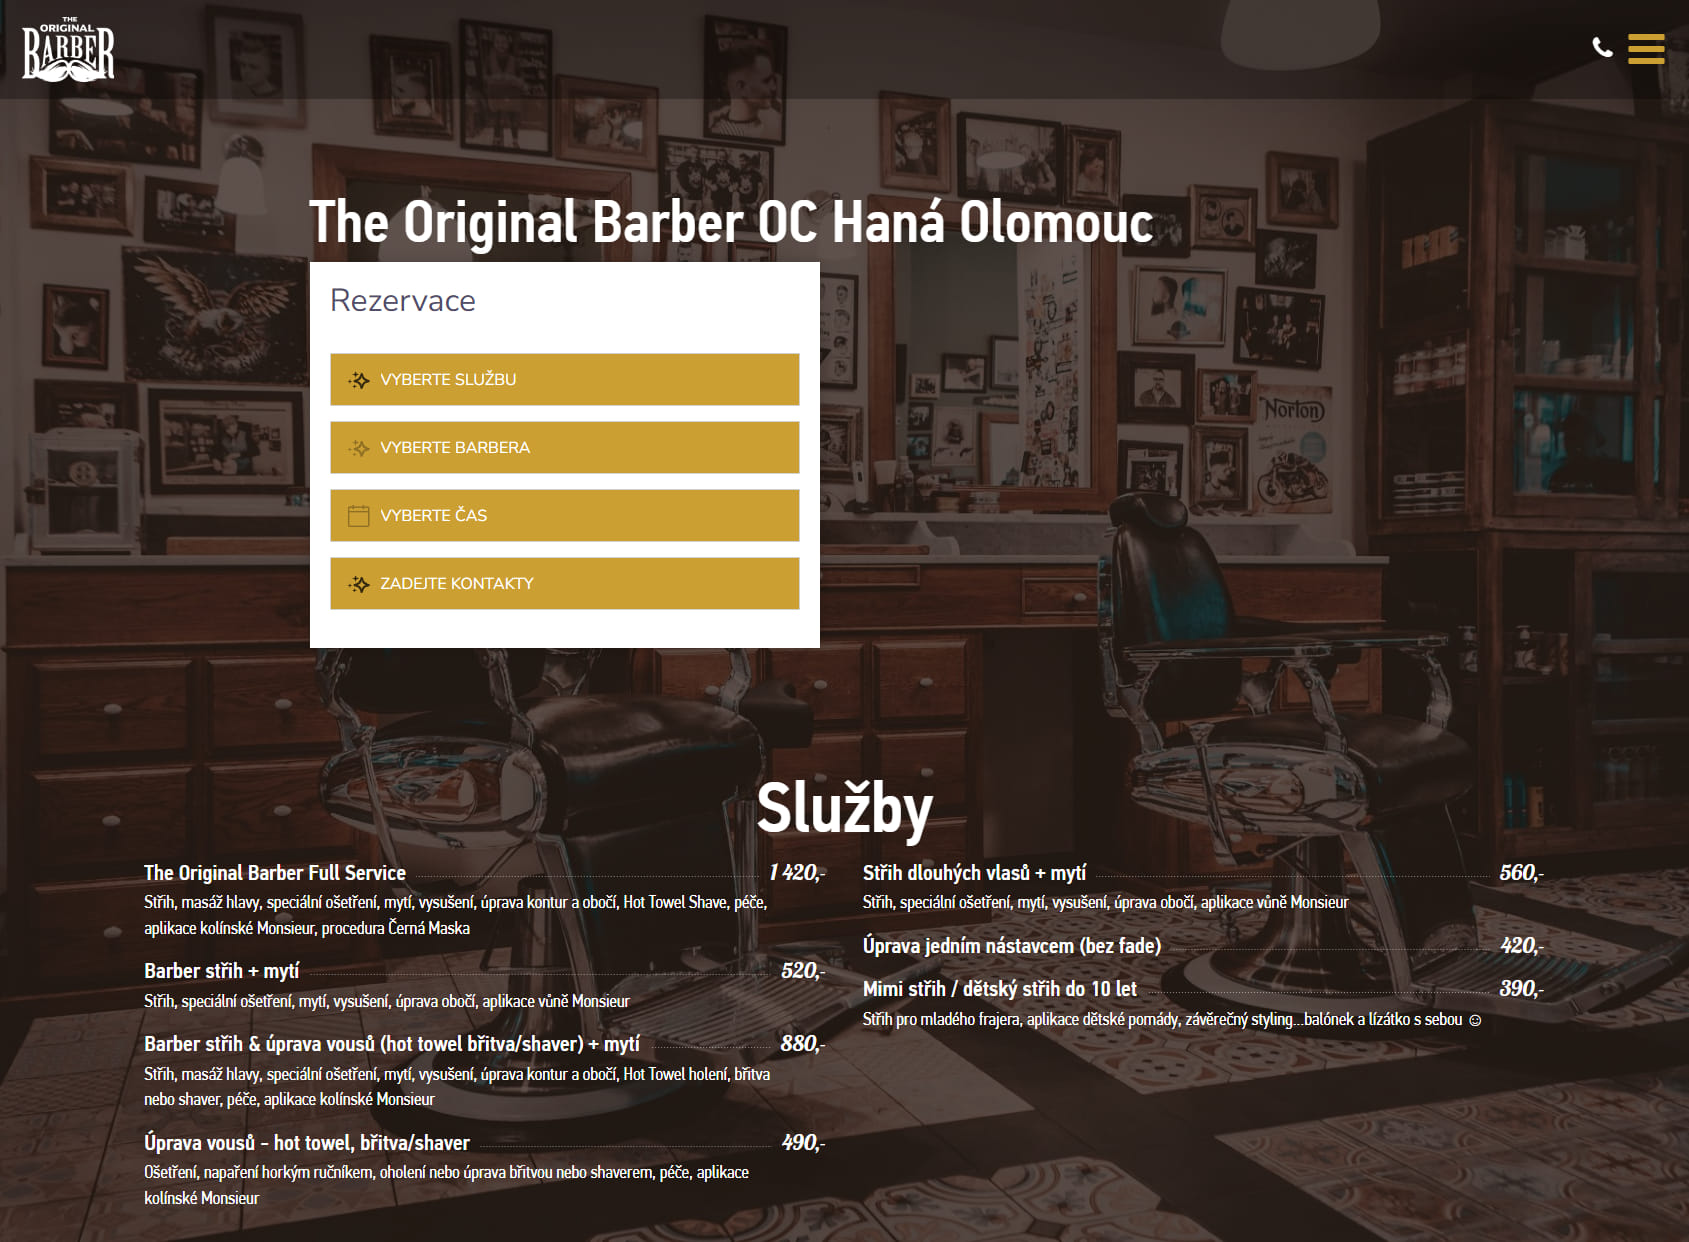 The Original Barber Shop - OC Haná - Olomouc